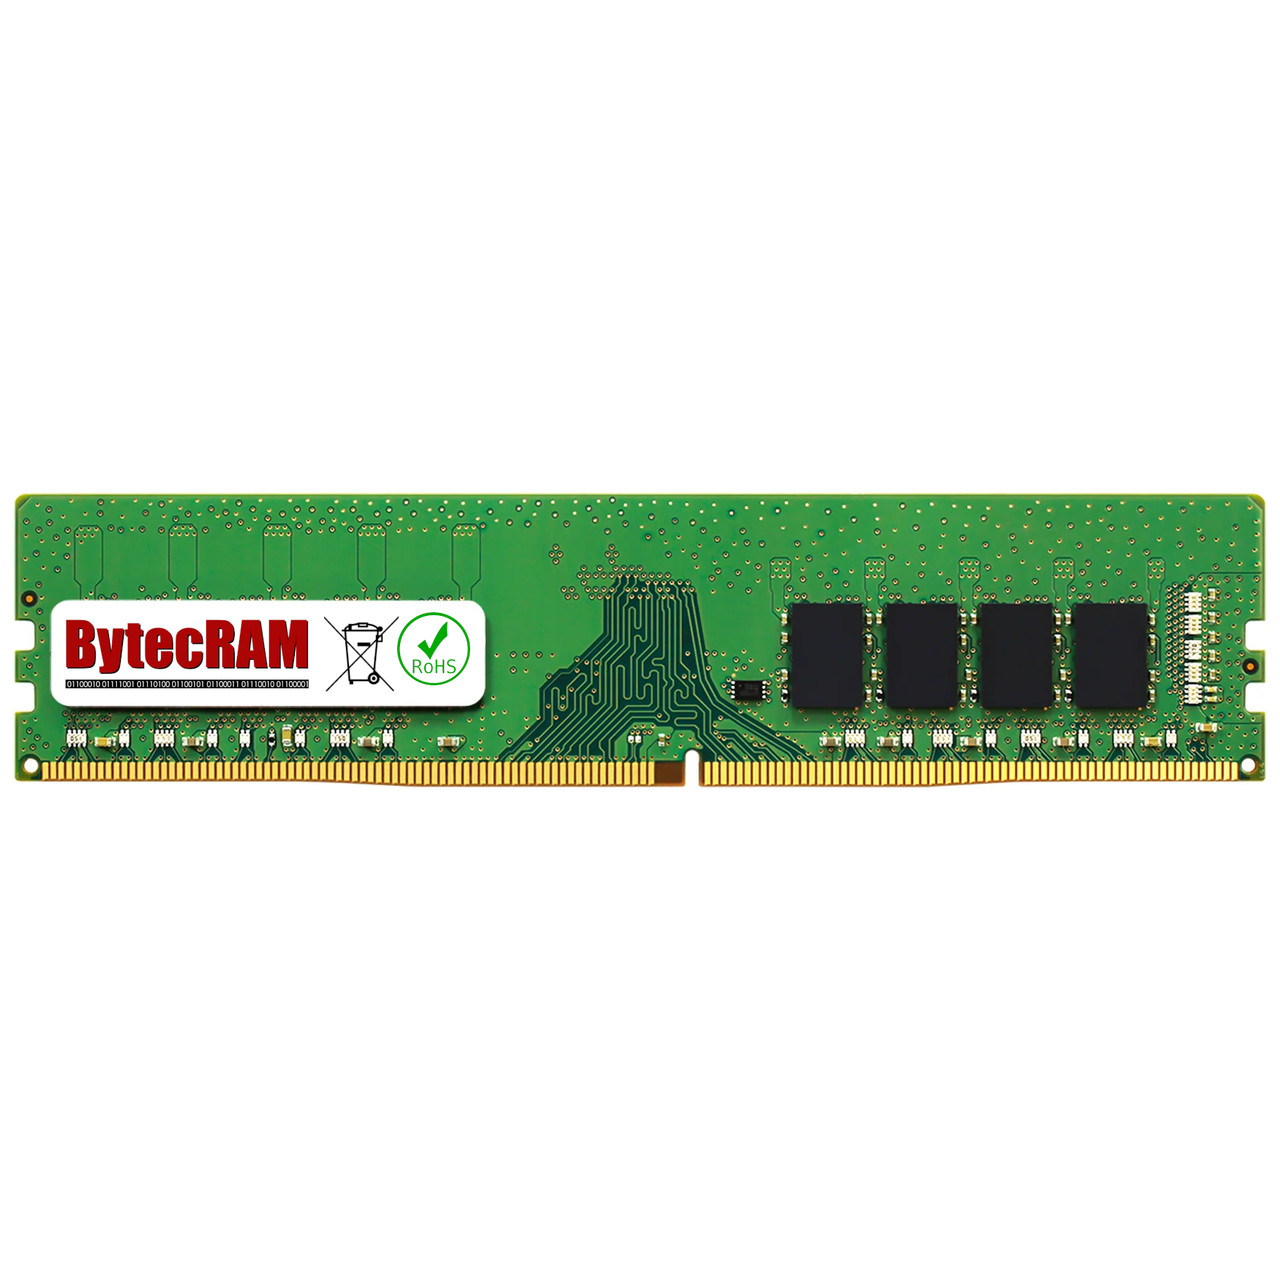 eBay*32GB HP 290 G4 DDR4 3200Mhz UDIMM Memory RAM Upgrade